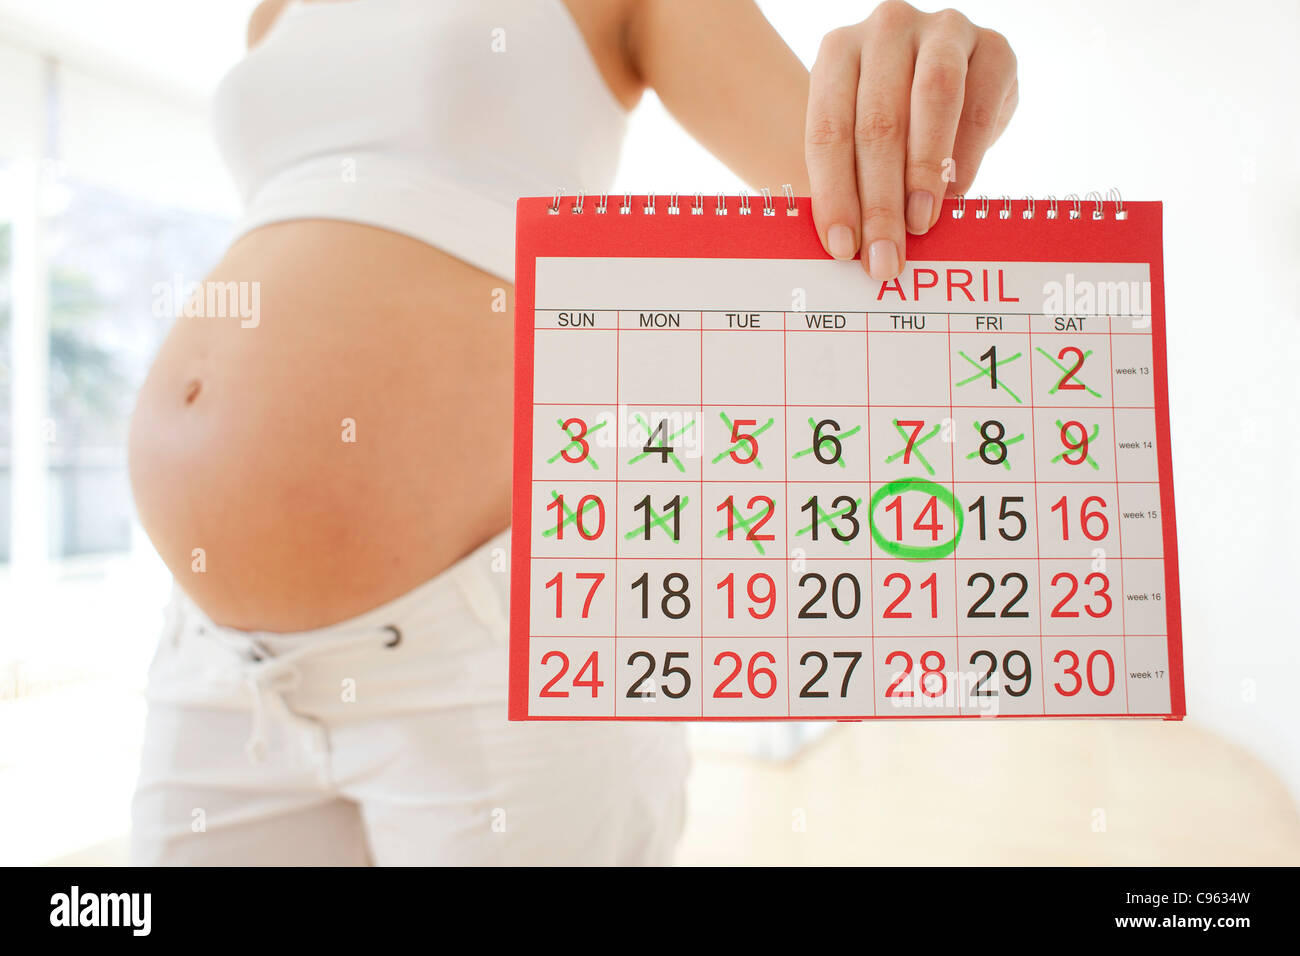 Недели беременности по дате месячных. Календарь беременности. Календарик для беременных. Беременность и роды календарь. Расчет даты родов.